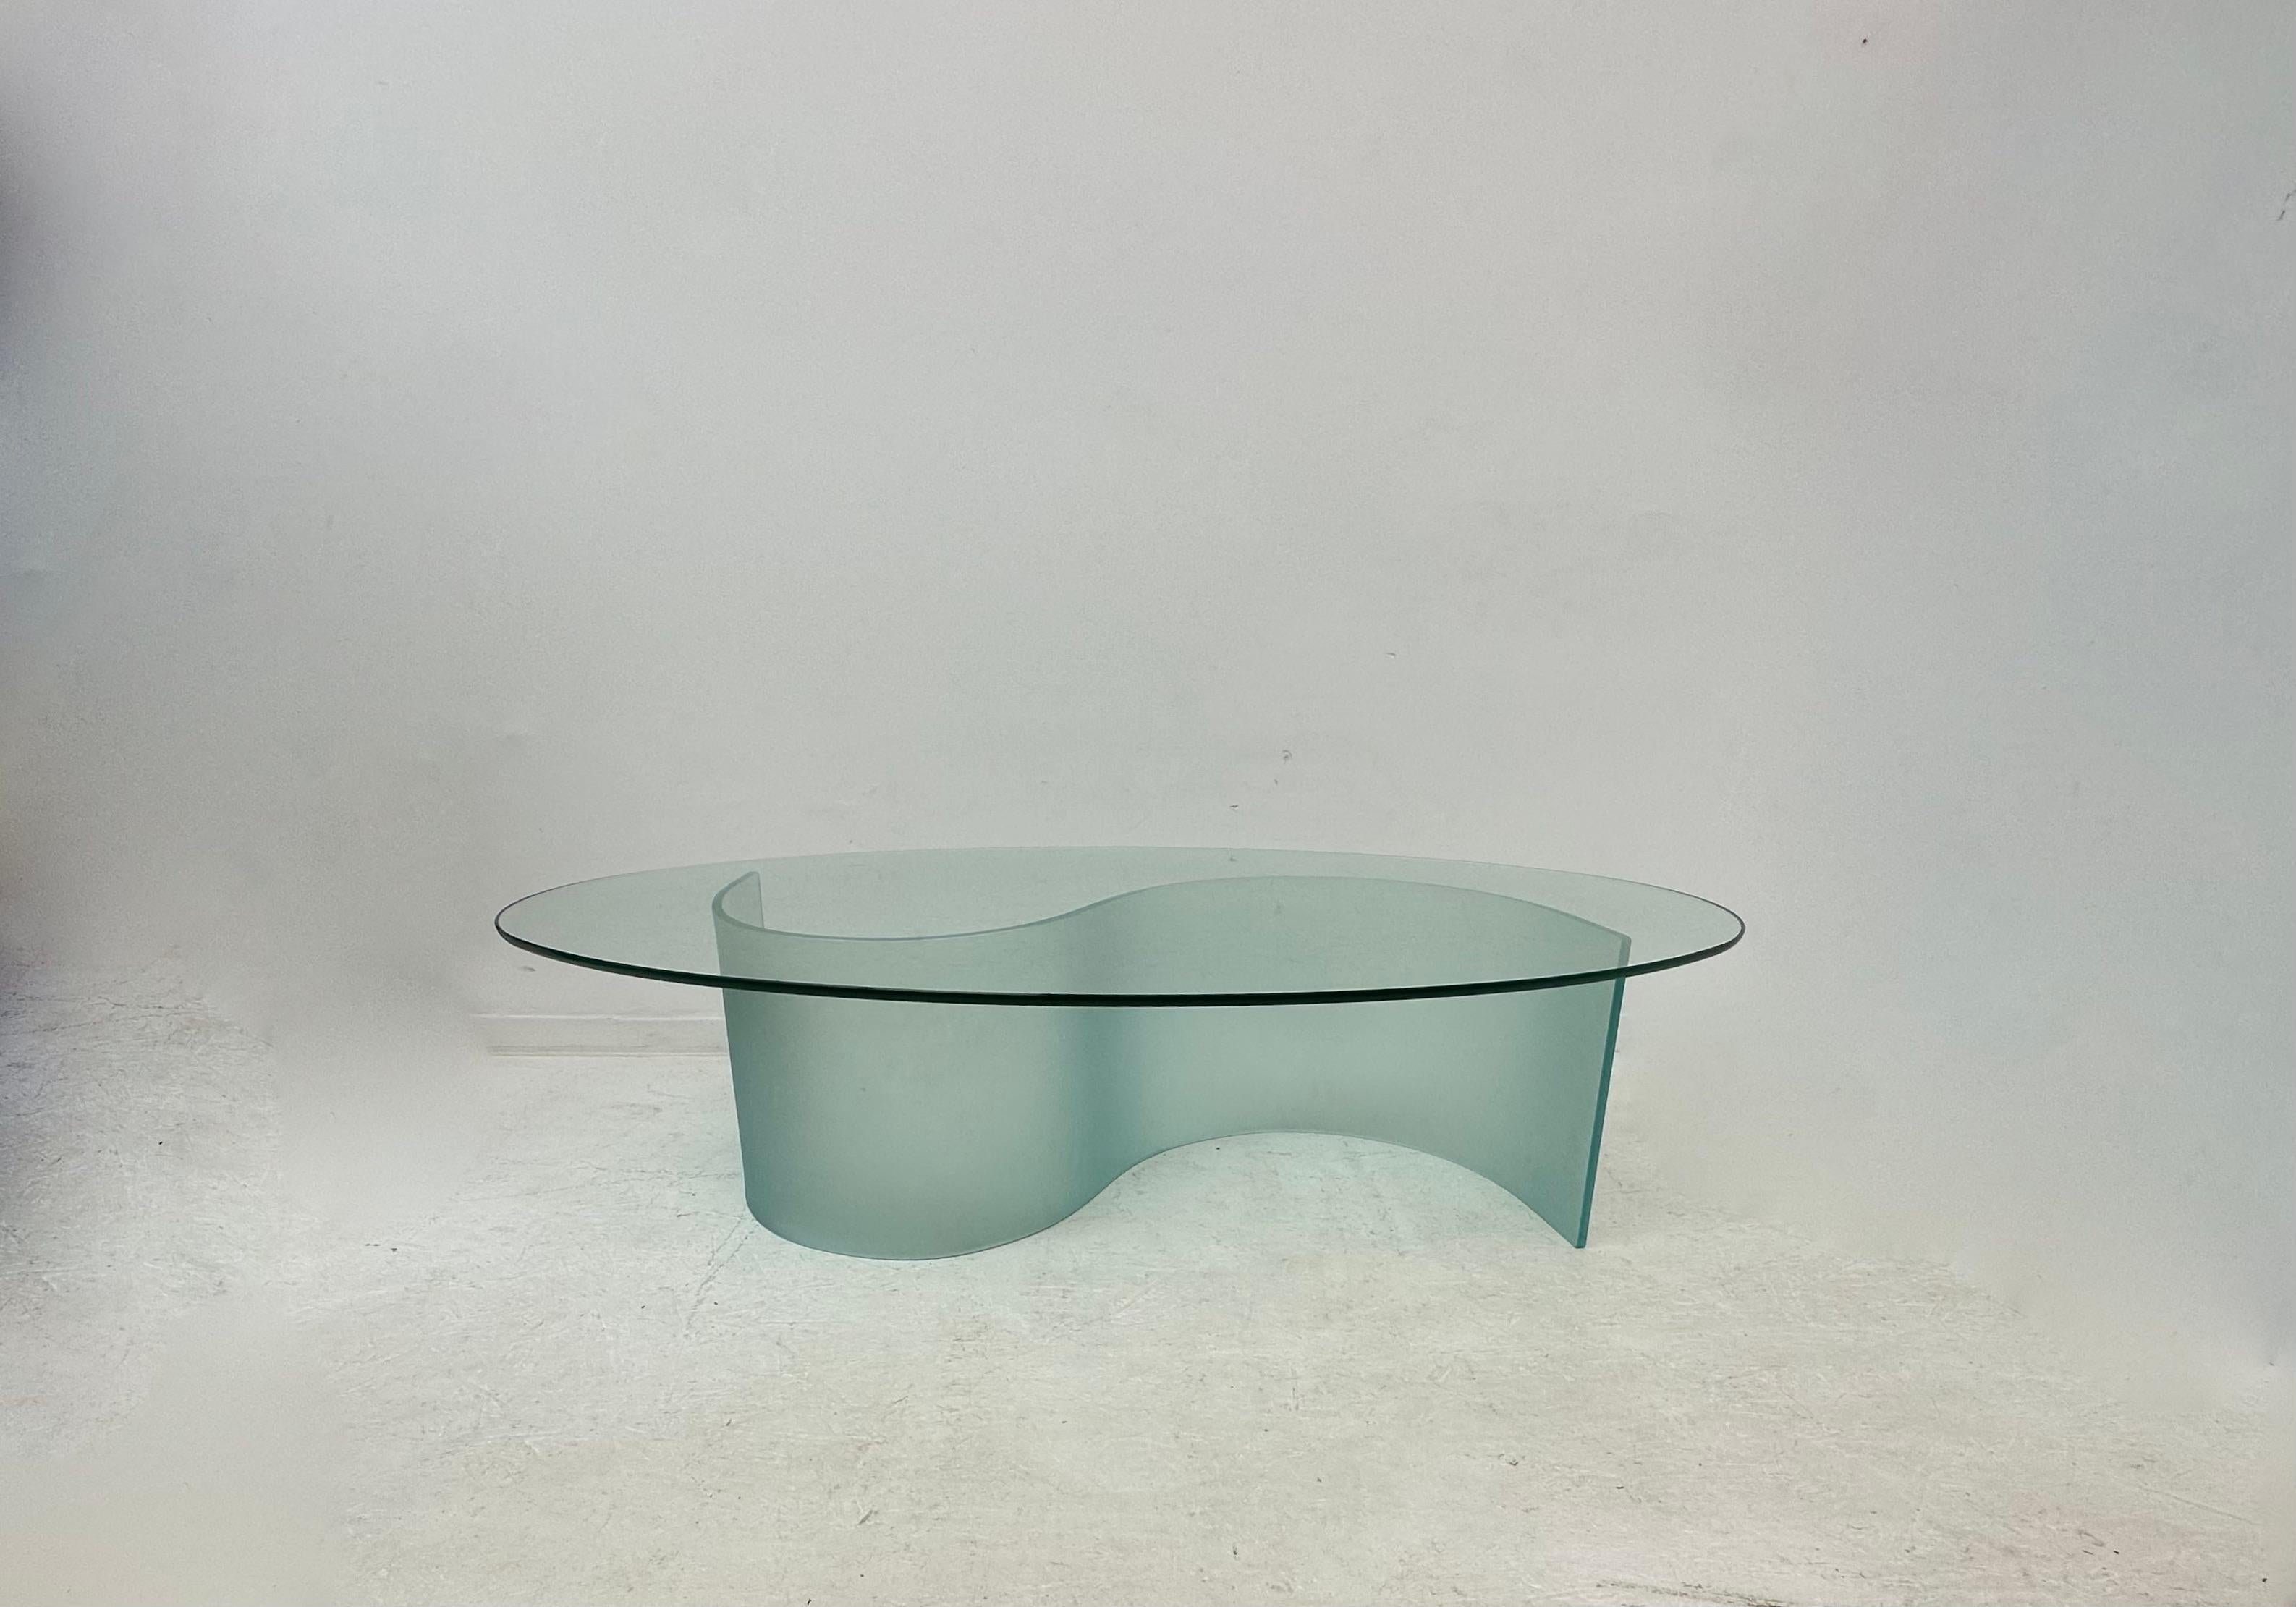 Table basse FIAM Design/One, années 1970

Dimensions : 139cm L, 80cm D, 36,5cm H
Période : 1970's
Matériau : Verre
Condit : Rayures sur la partie supérieure.